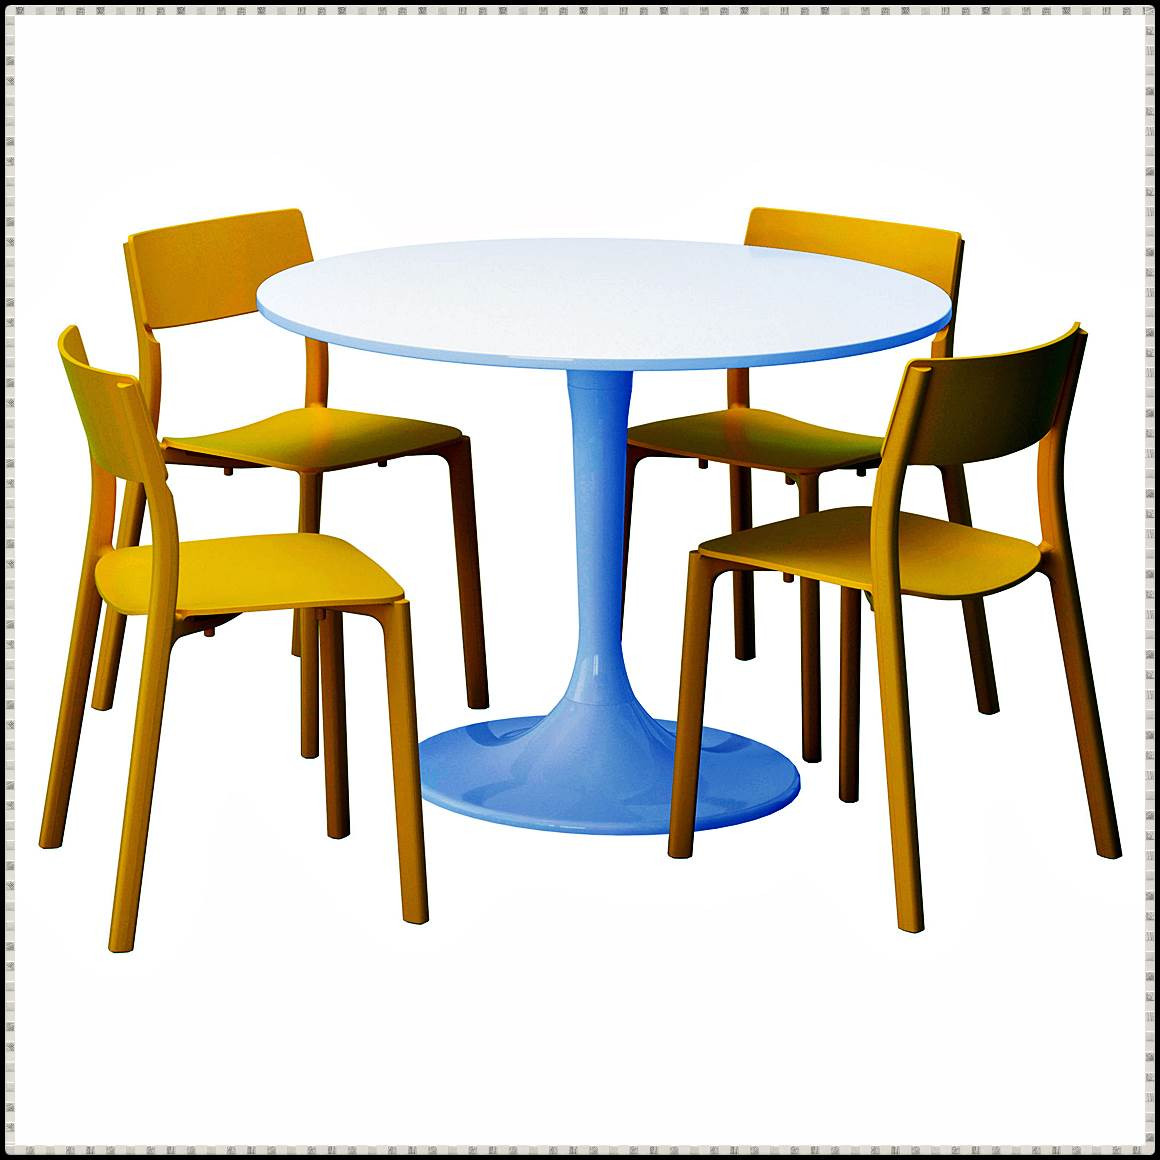 Ikea Runder Tisch
 Inspirierende Ikea Runder Tisch Mit 4 Stühlen